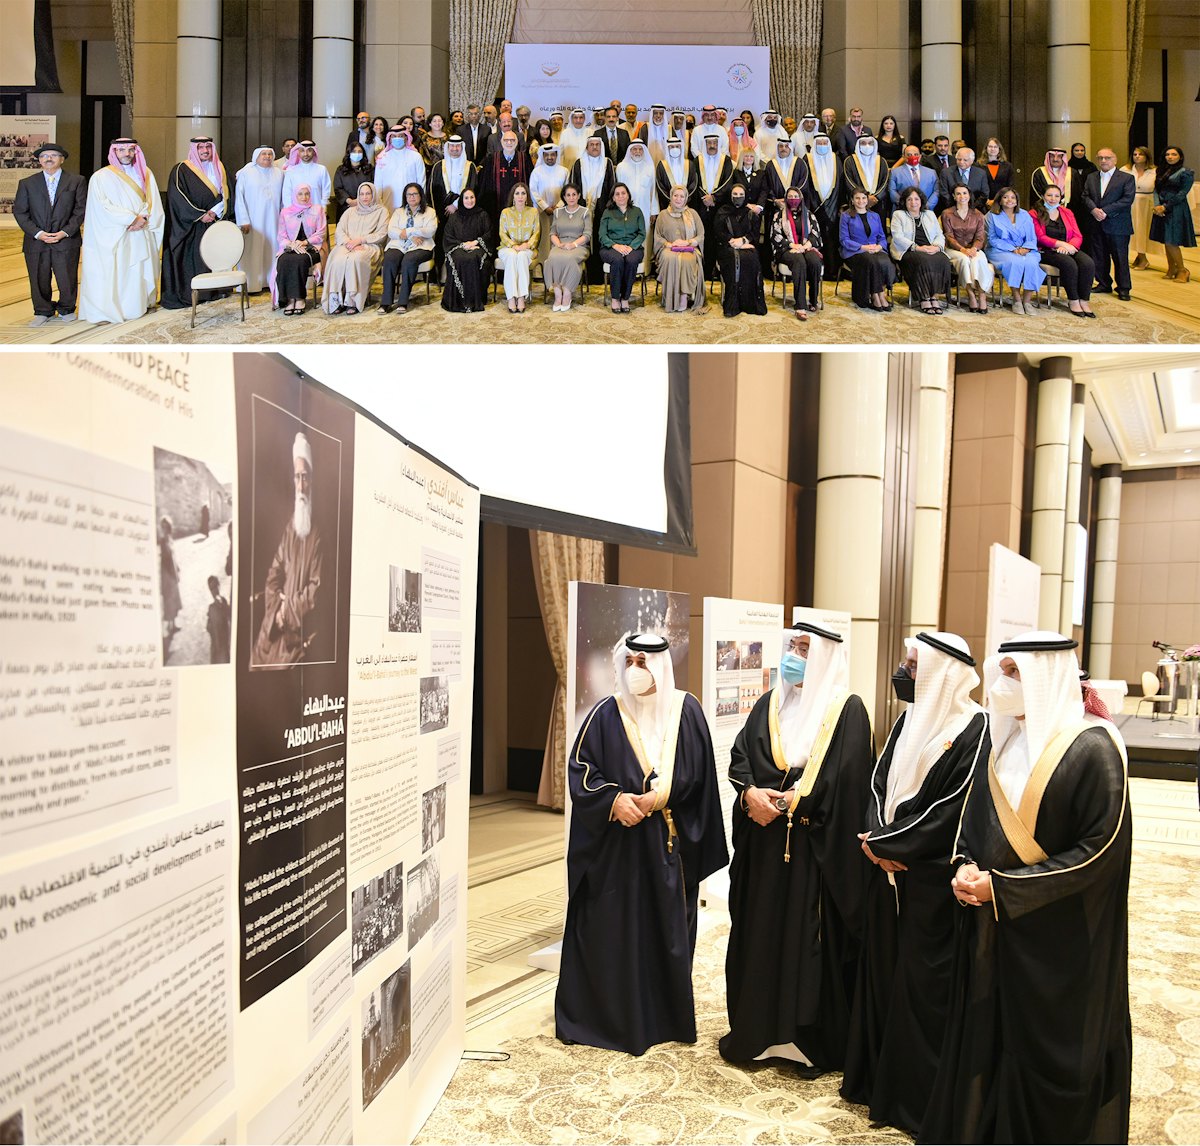 Un encuentro nacional sobre convivencia organizado por los bahá’ís de Bahréin reunió al jeque Khalid bin Khalifa Al Khalifa, en representación del Rey de Bahréin, y a otras figuras prominentes para reflexionar sobre el llamamiento de ‘Abdu’l‑Bahá a la paz.